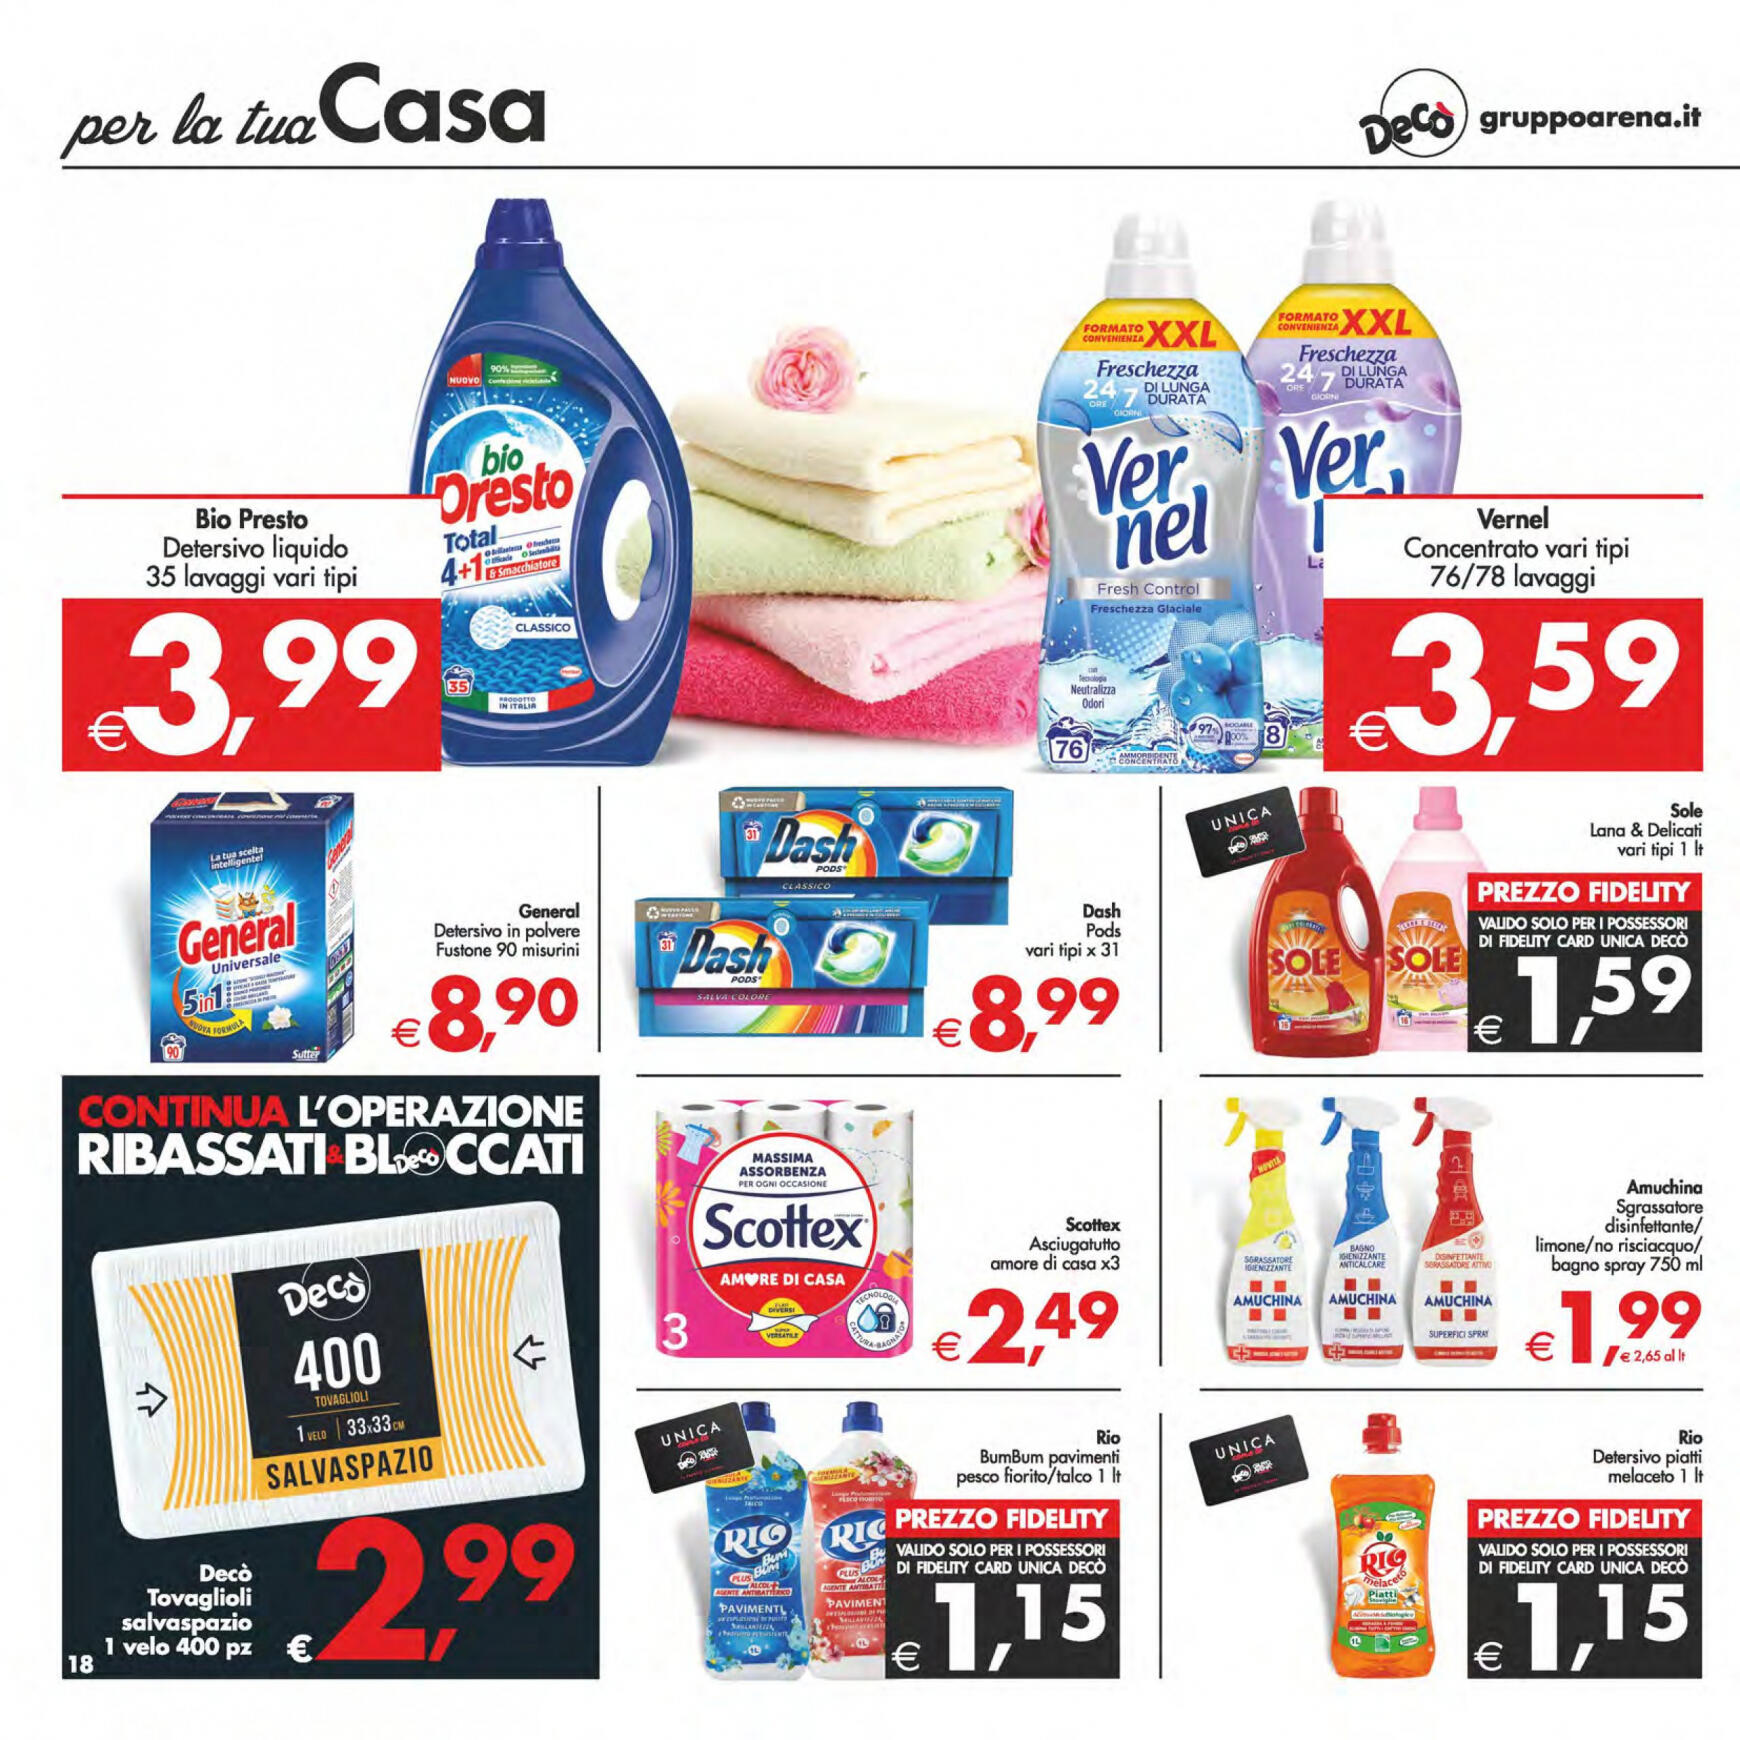 deco - Nuovo volantino Decò - Maxistore/Supermercati/Local 14.05. - 23.05. - page: 18